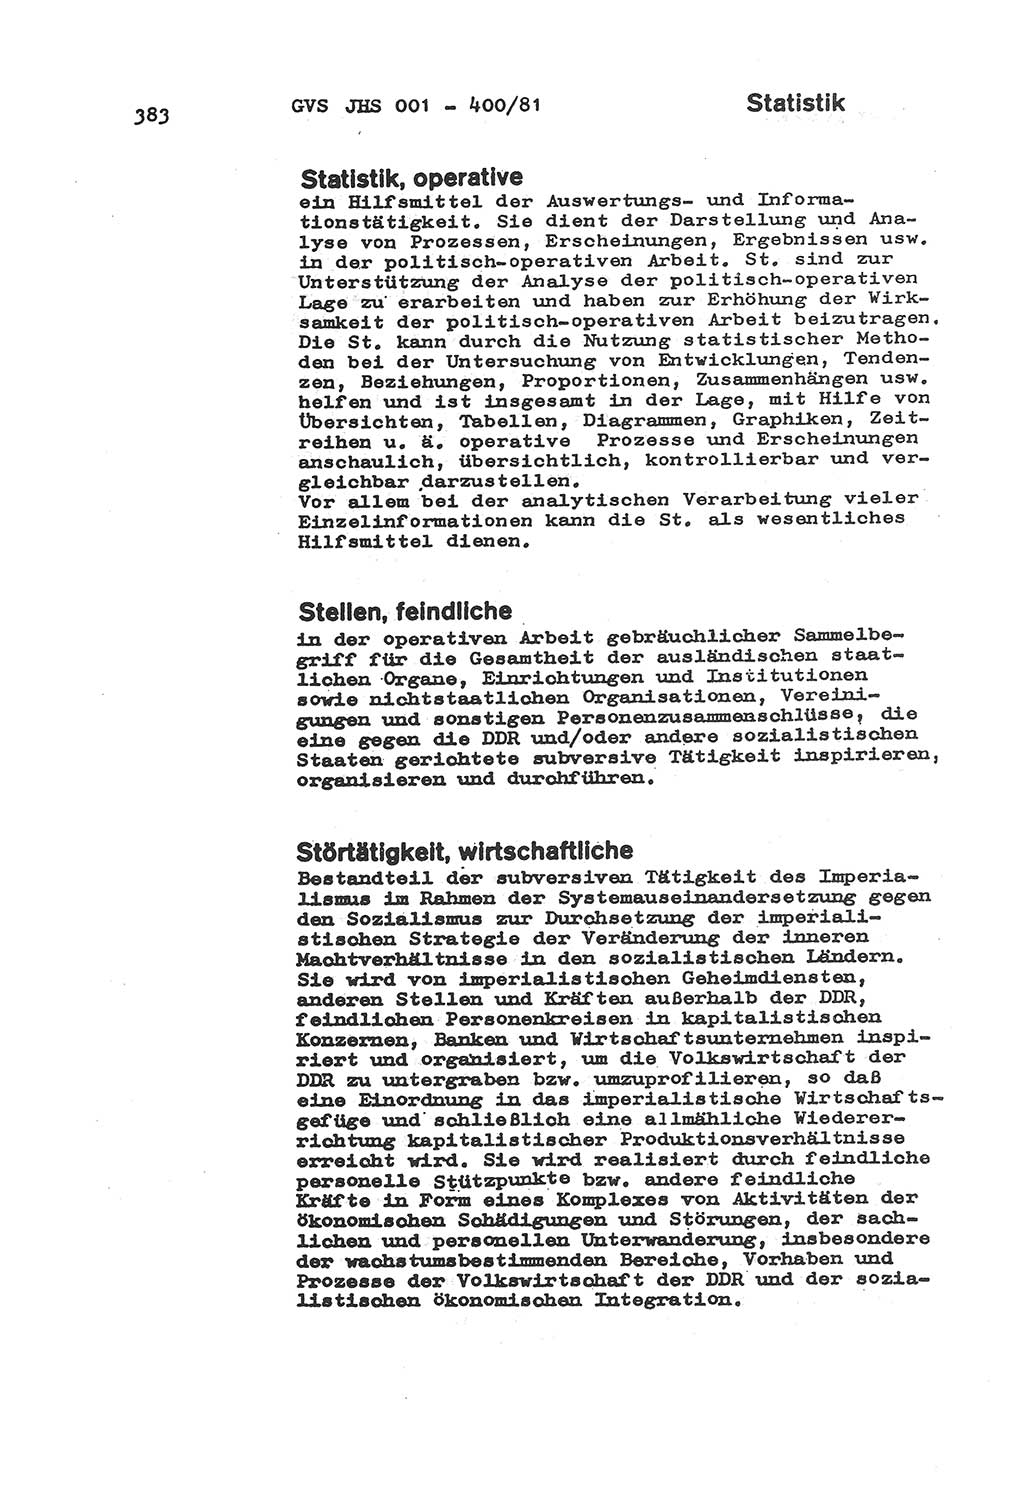 Wörterbuch der politisch-operativen Arbeit, Ministerium für Staatssicherheit (MfS) [Deutsche Demokratische Republik (DDR)], Juristische Hochschule (JHS), Geheime Verschlußsache (GVS) o001-400/81, Potsdam 1985, Blatt 383 (Wb. pol.-op. Arb. MfS DDR JHS GVS o001-400/81 1985, Bl. 383)